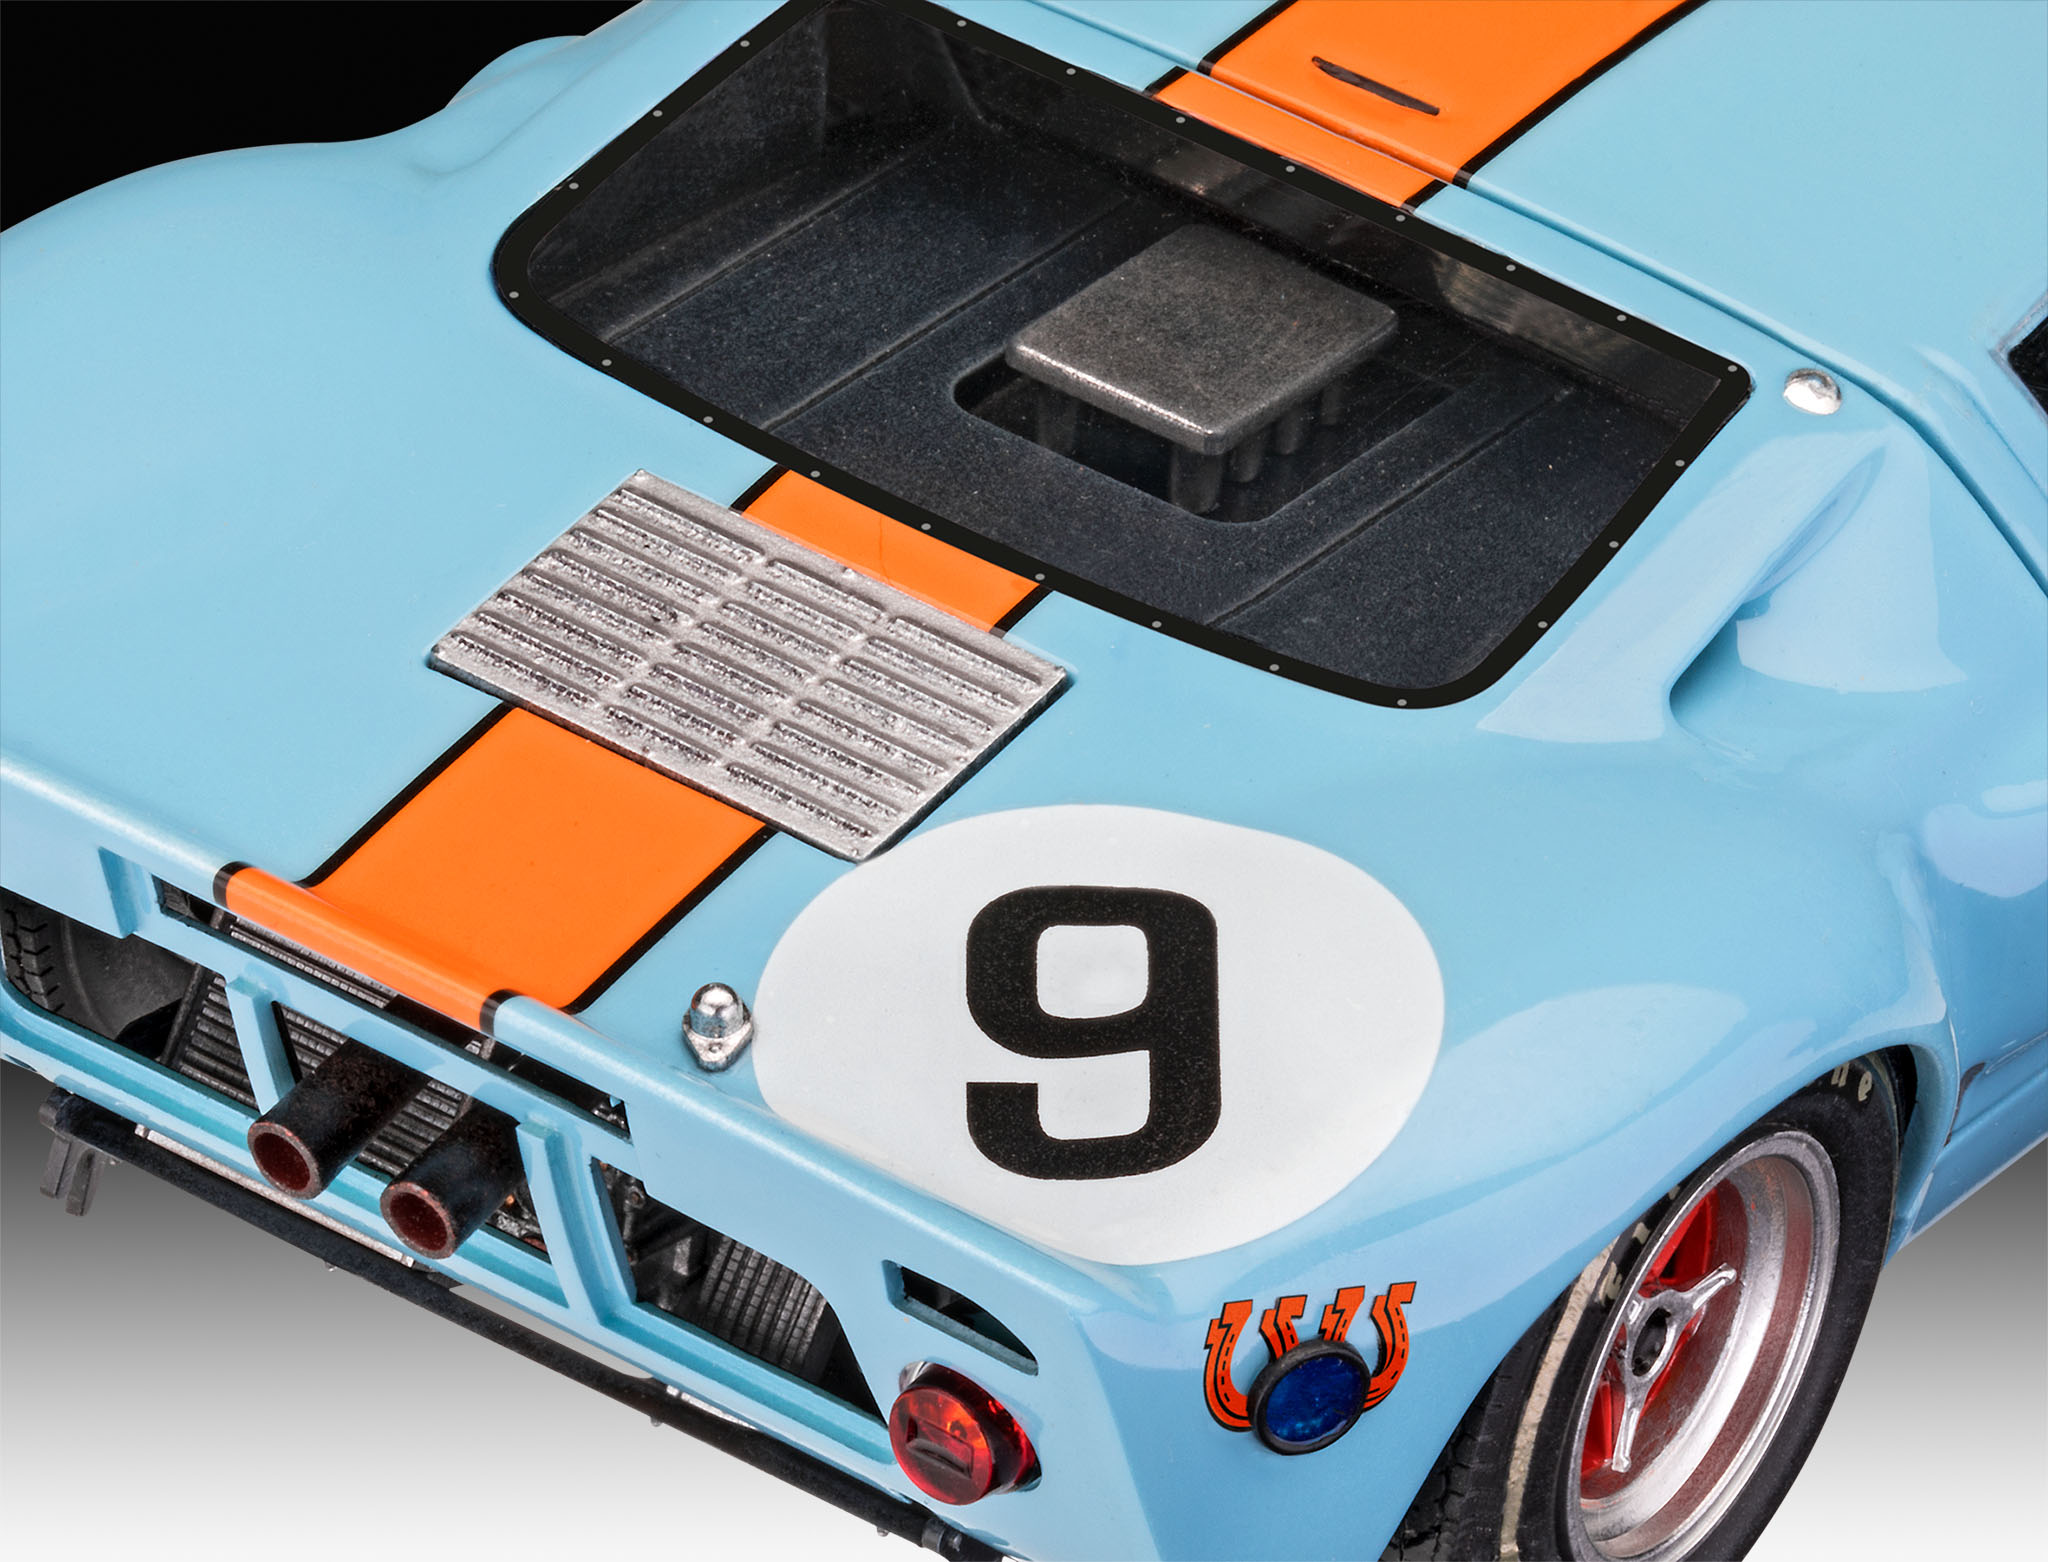 Revell 07696 Ford GT40 Le Mans 1:24 Plastic Model Kit